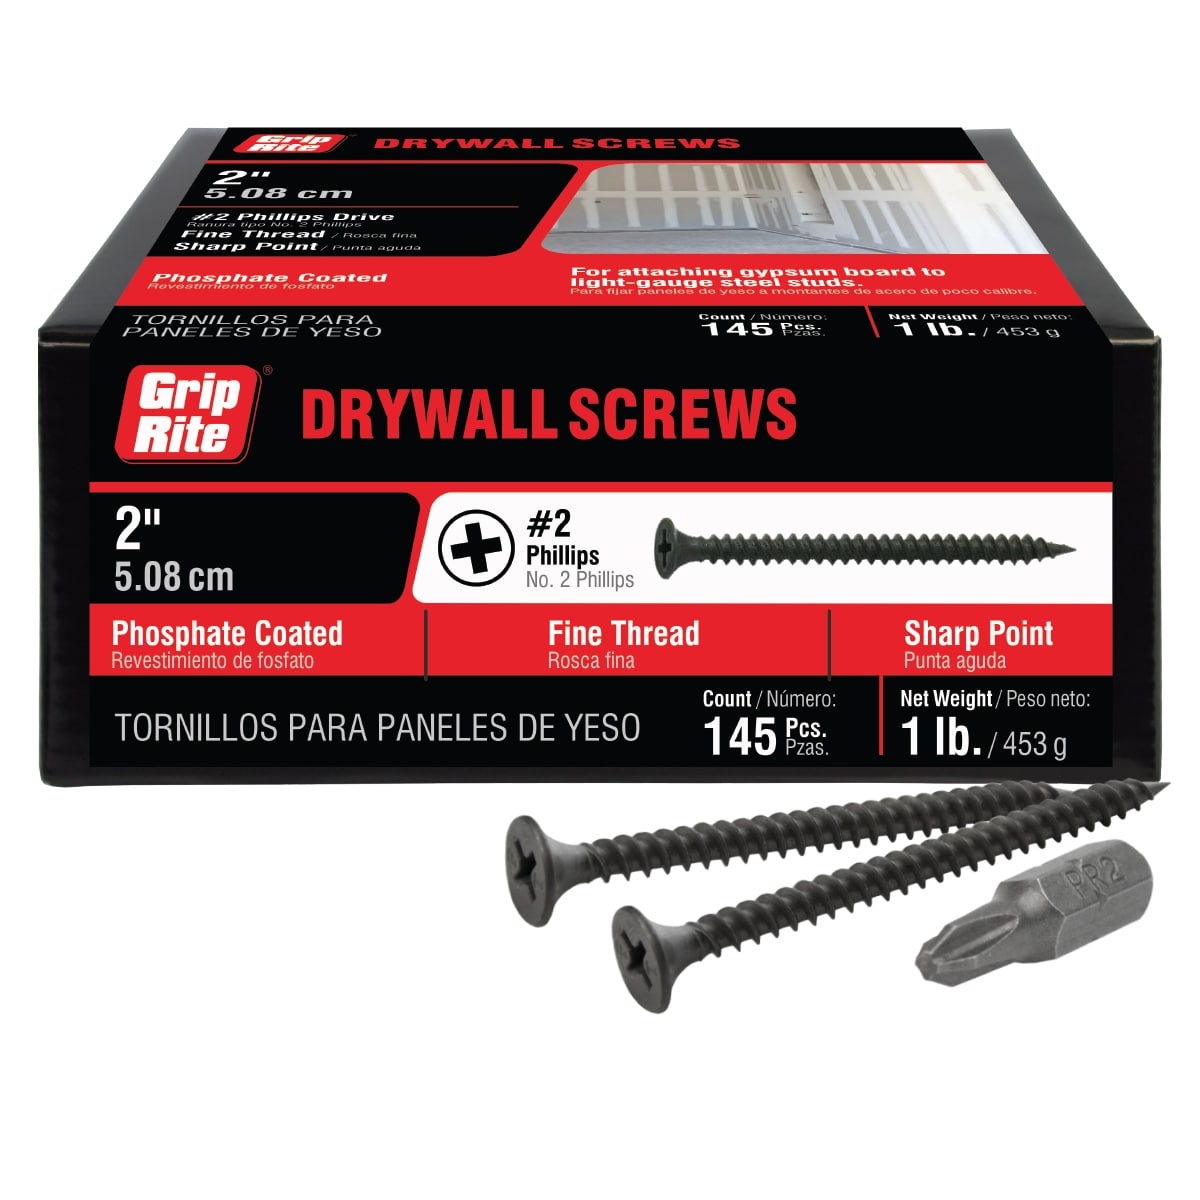 1 lb. # 6 X 2 Bugle Head Fine Thread Drywall Screws 